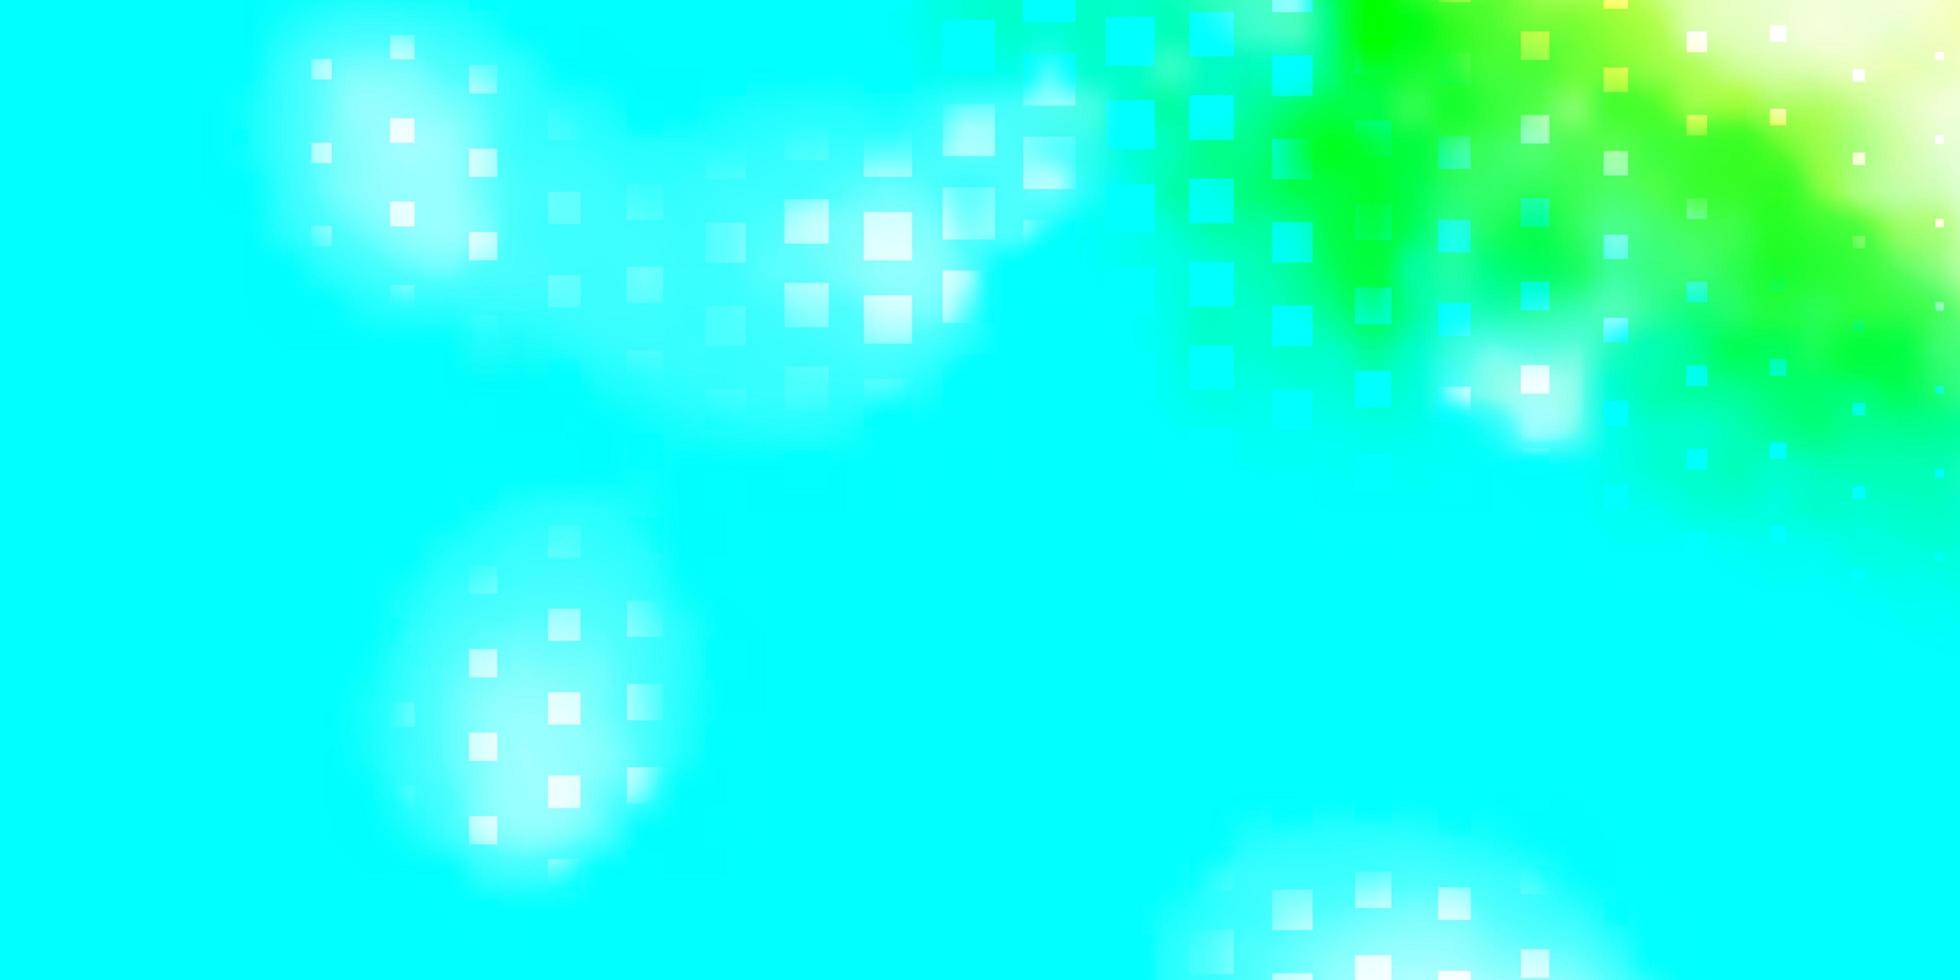 fundo vector azul e verde claro com retângulos.